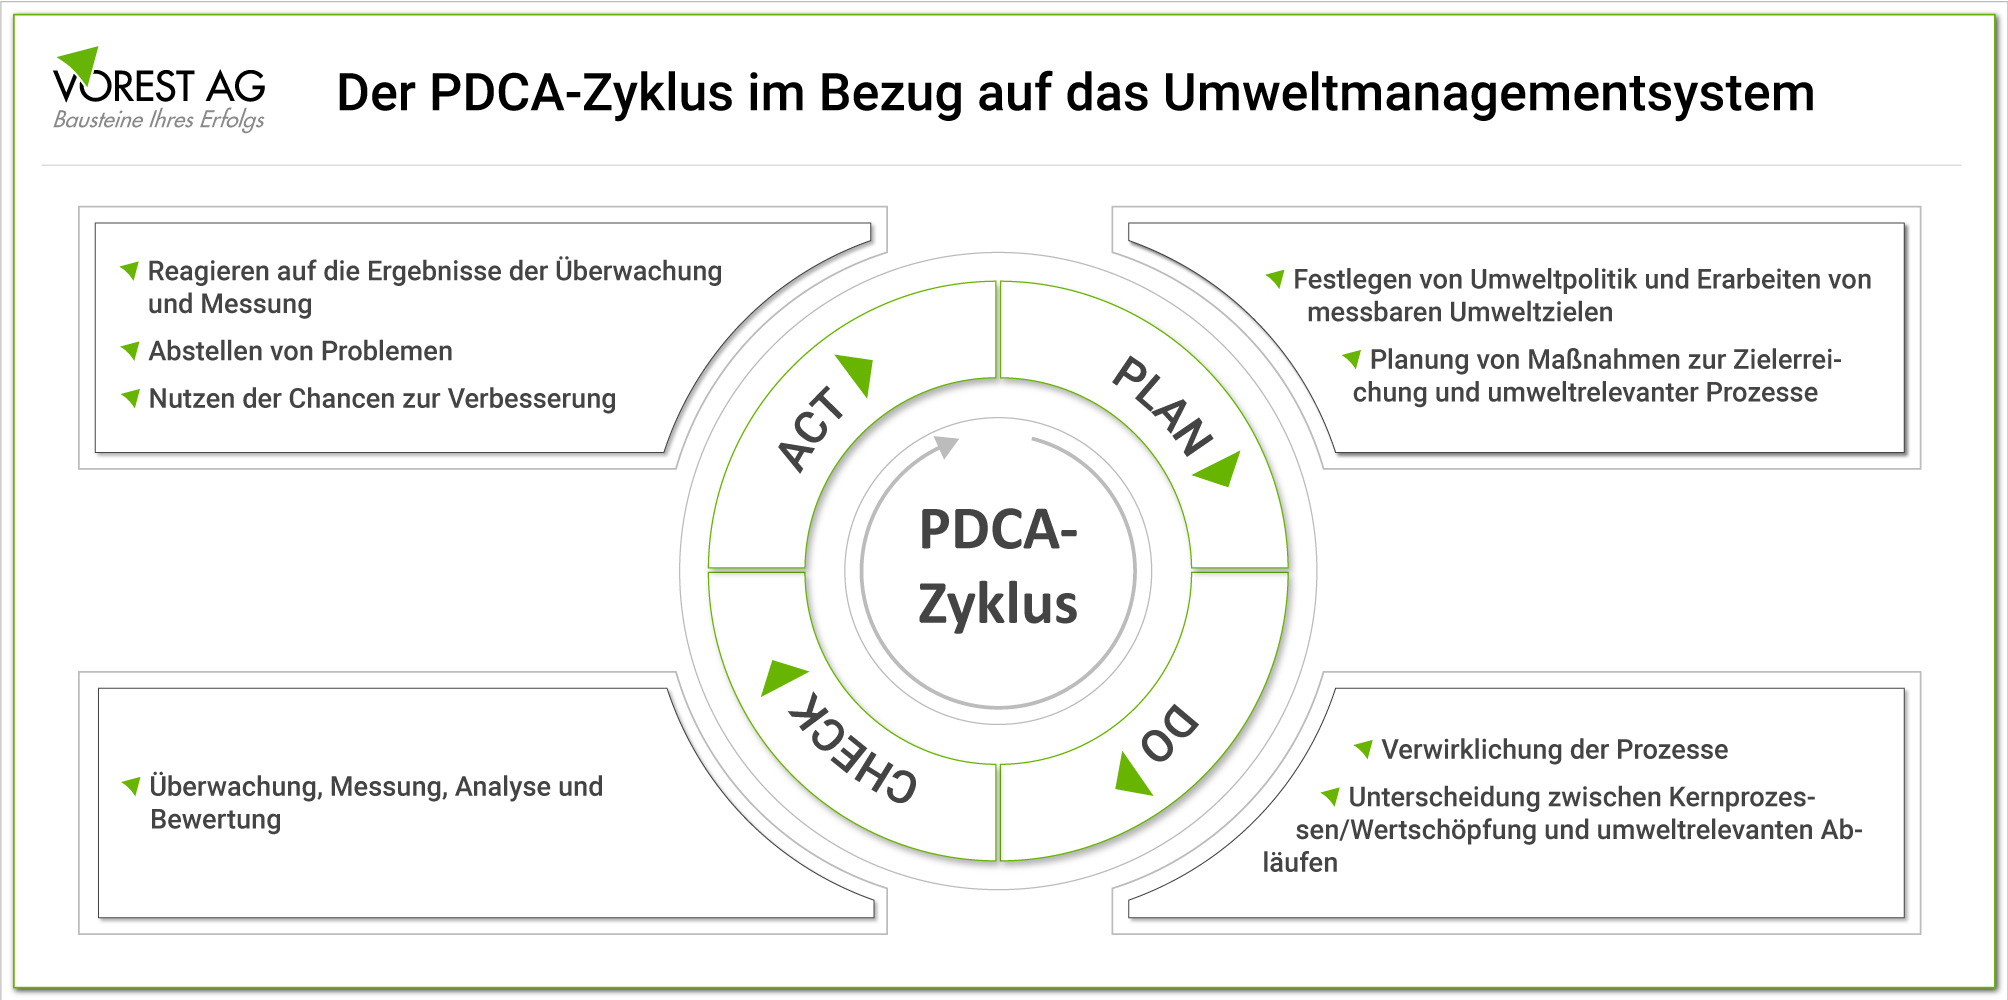 Der PDCA Zyklus bei einem Umweltmanagementsystem